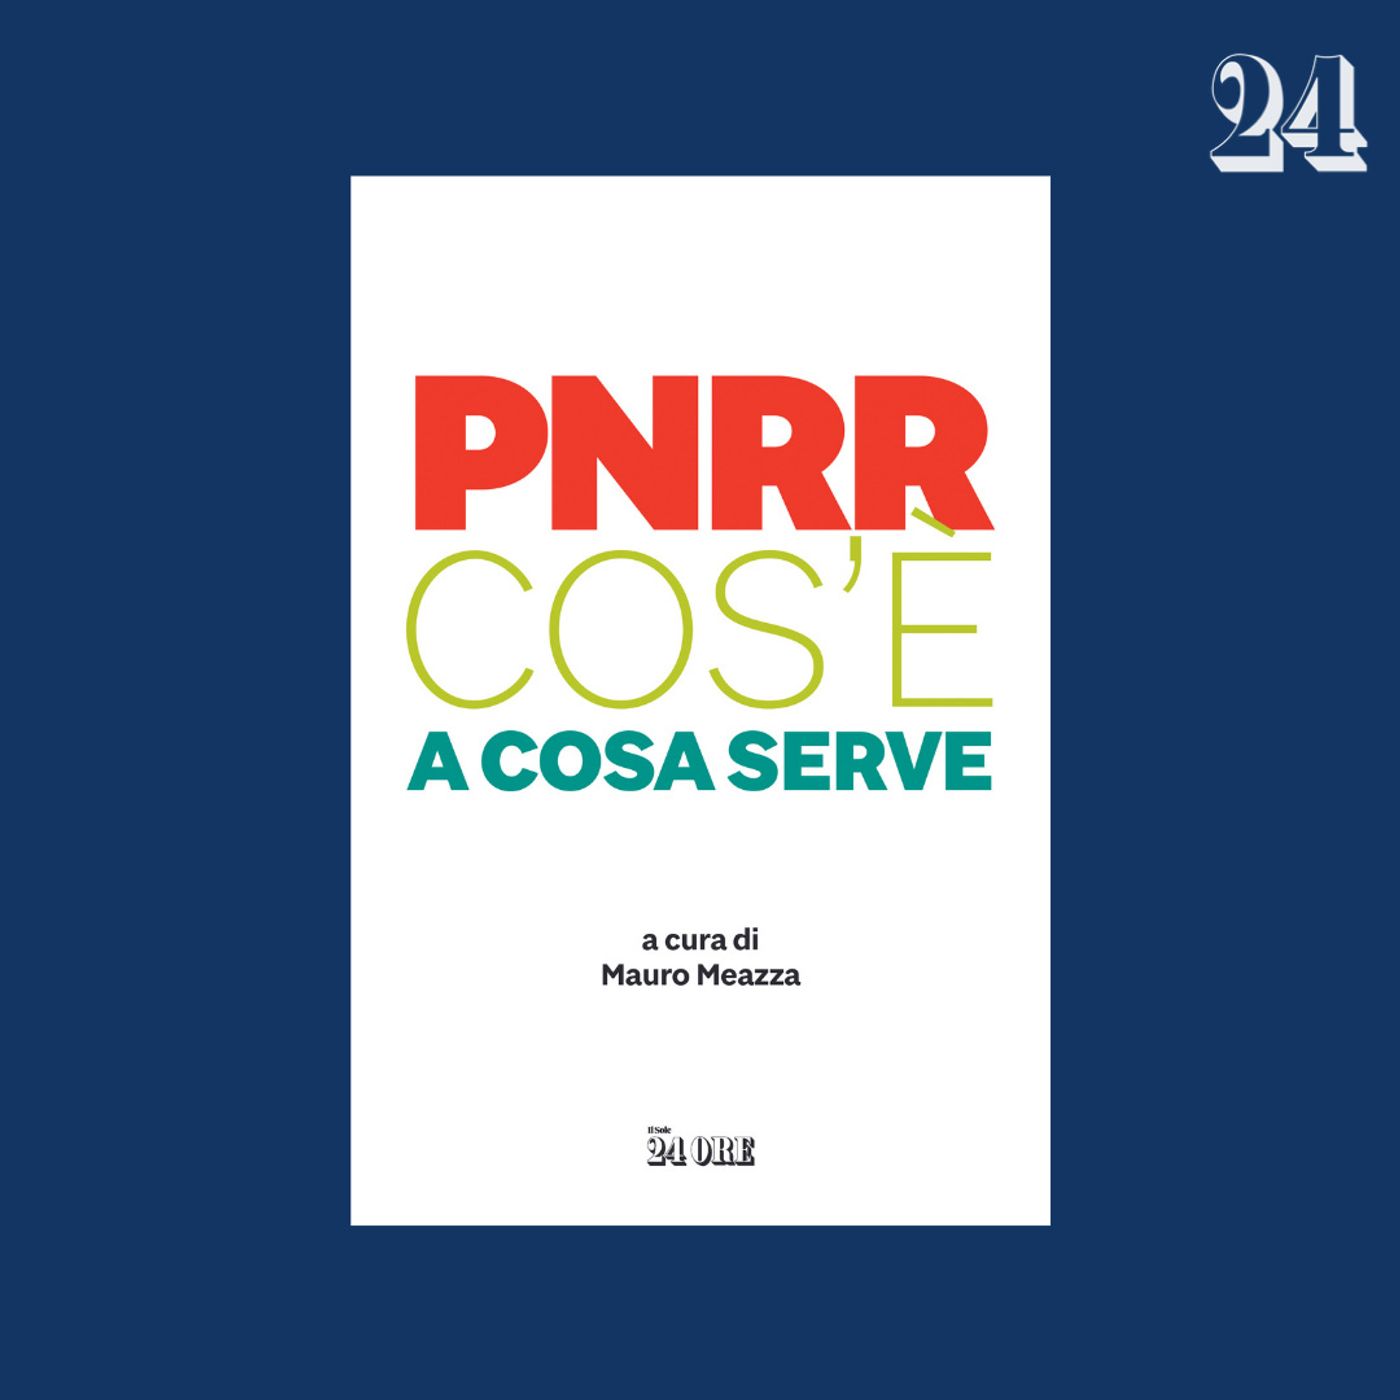 PNRR, che cos’è e a cosa serve?